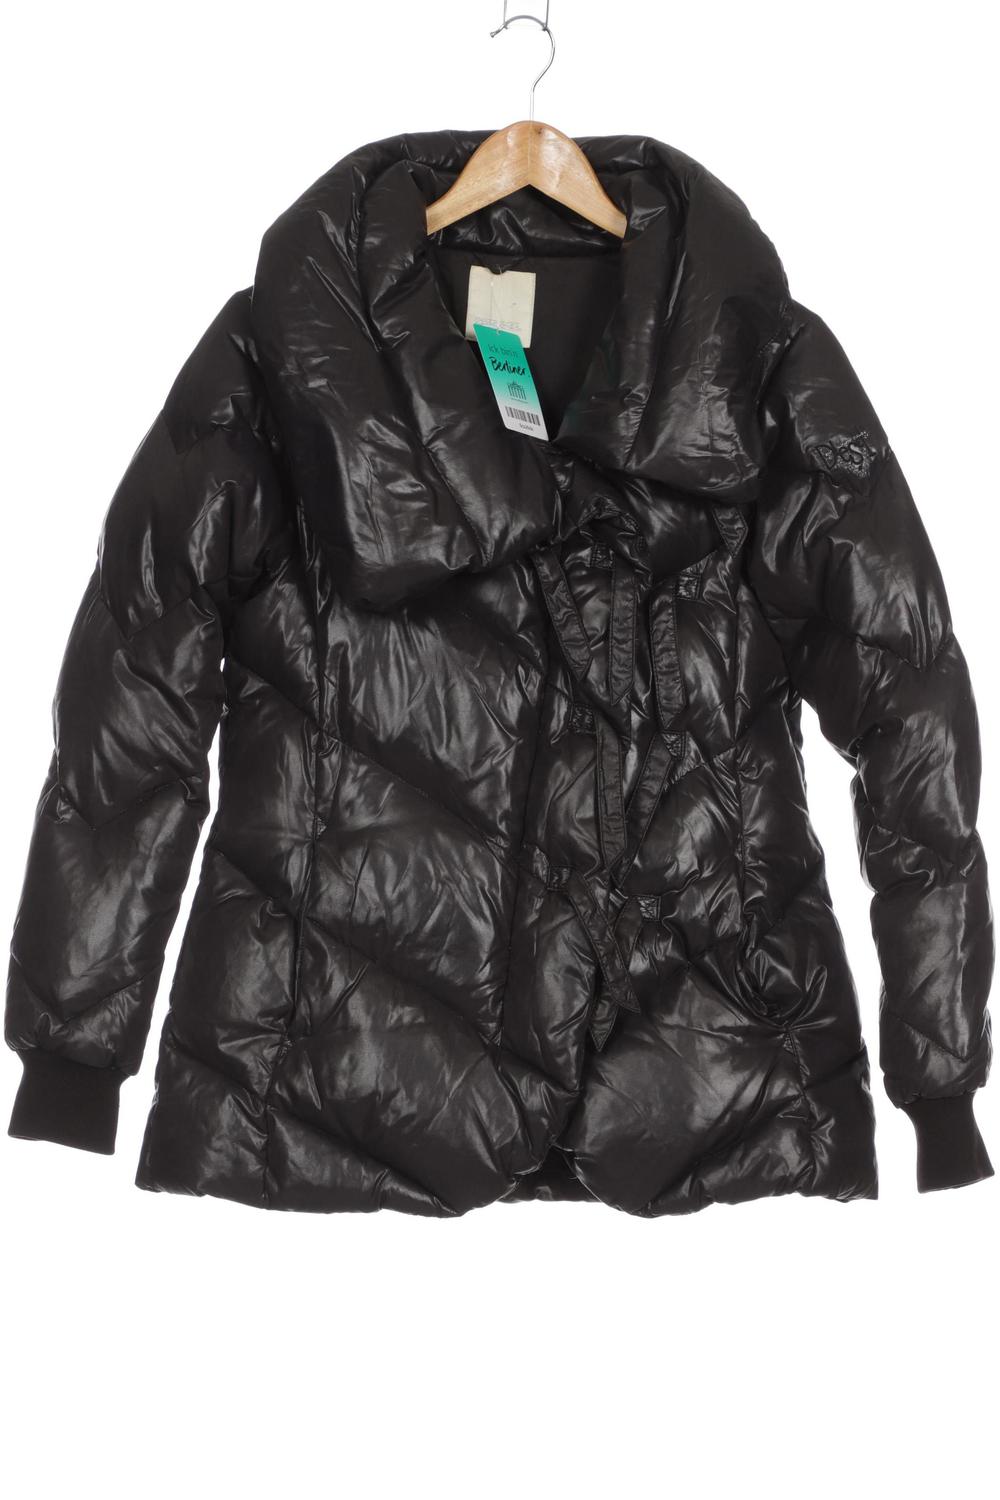 Diesel Jacke Damen Mantel Gr. XXL schwarz #31812a9 | eBay